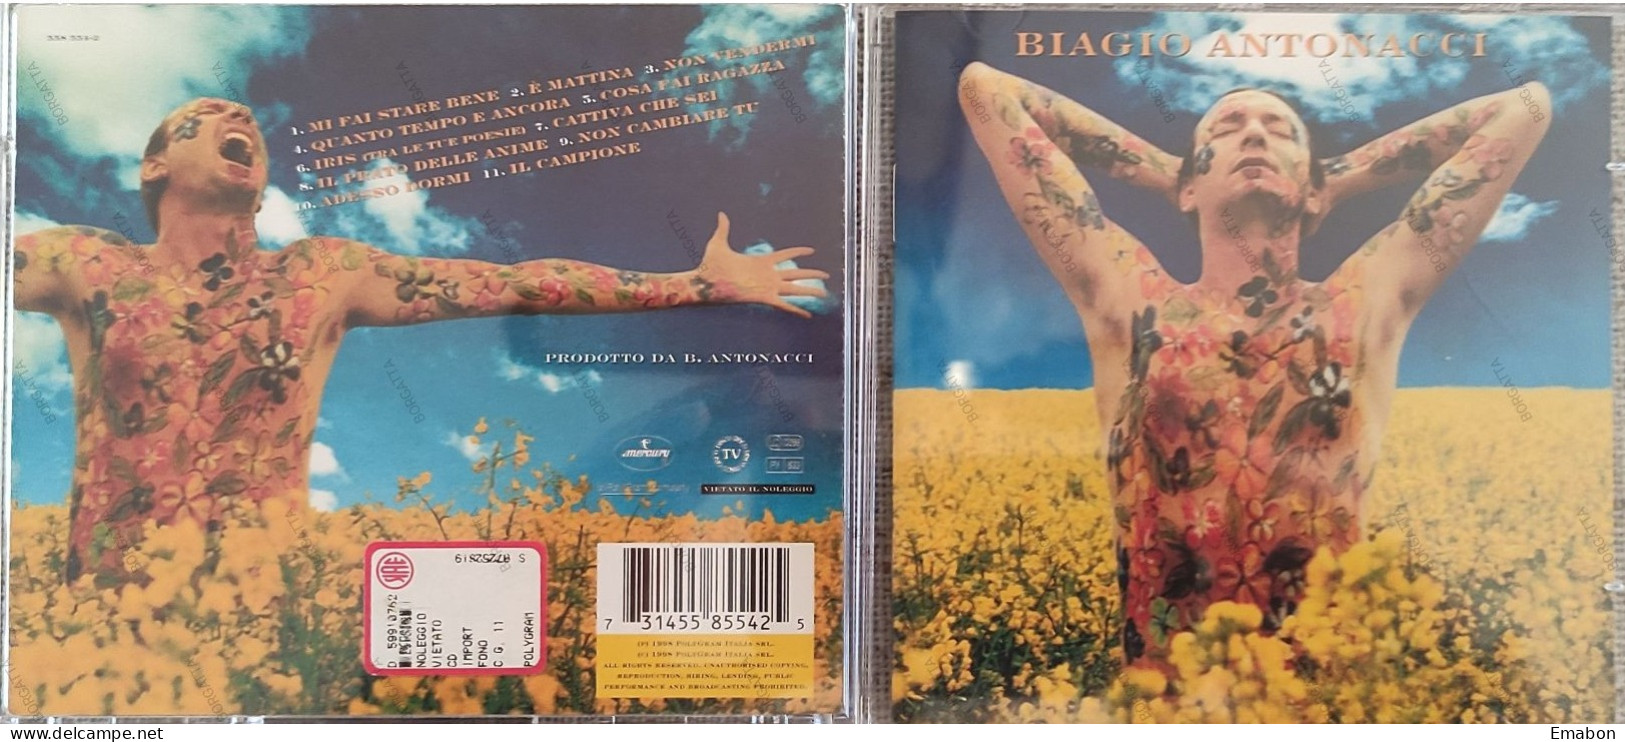 BORGATTA - ITALIANA - Cd  BIAGIO ANTONACCI - MI FAI STARE BENE  - POLYGRAM 1998 -  USATO In Buono Stato - Autres - Musique Italienne